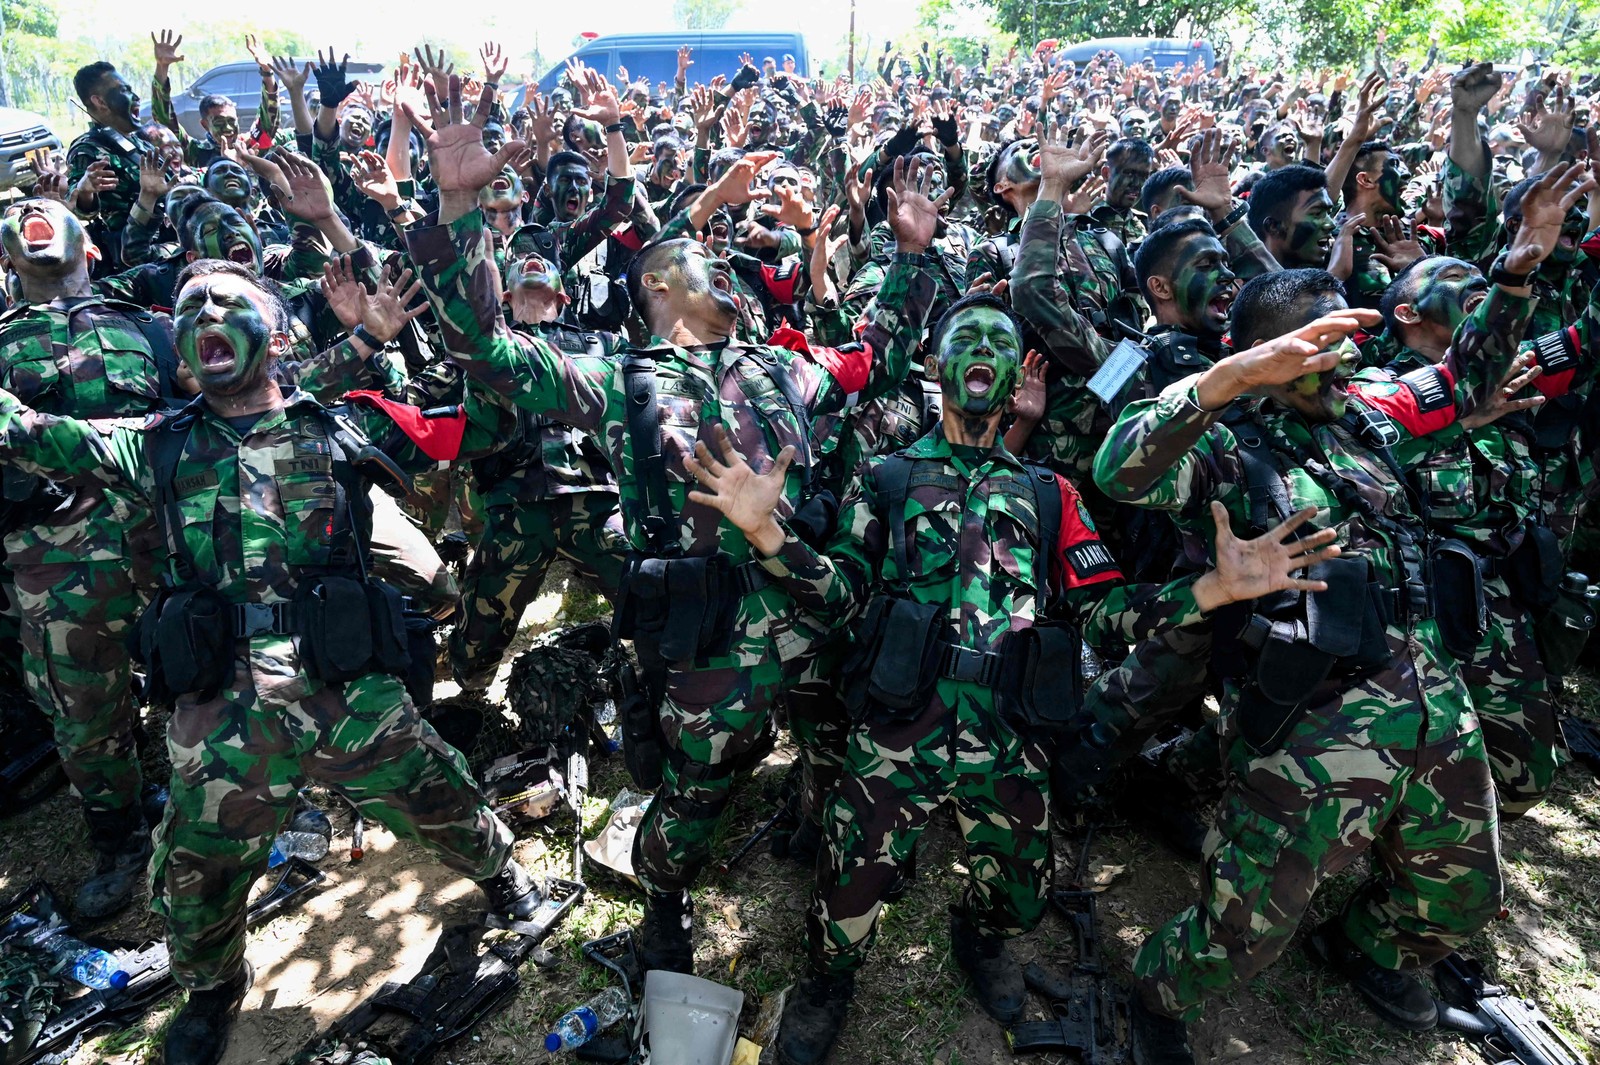 Soldados do comando militar Iskandar Muda cantam após um exercício de multitarefa militar em Jantho, província de Aceh, Indonésia — Foto: CHAIDEER MAHYUDDIN / AFP